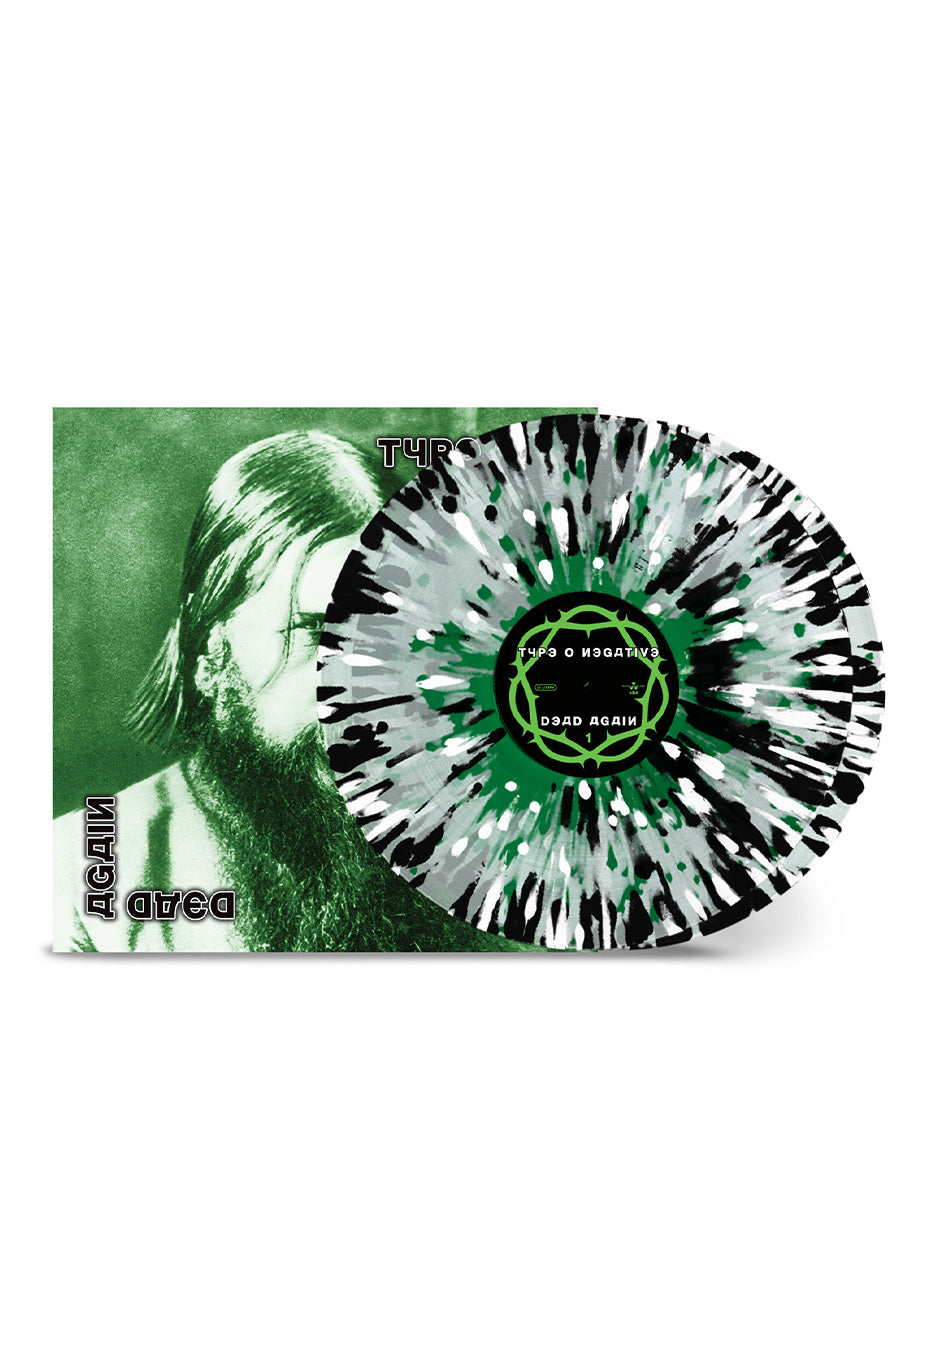 Type O Negative - Dead Again Ltd. Clear Green/White/Black - Splatter 2 Vinyl